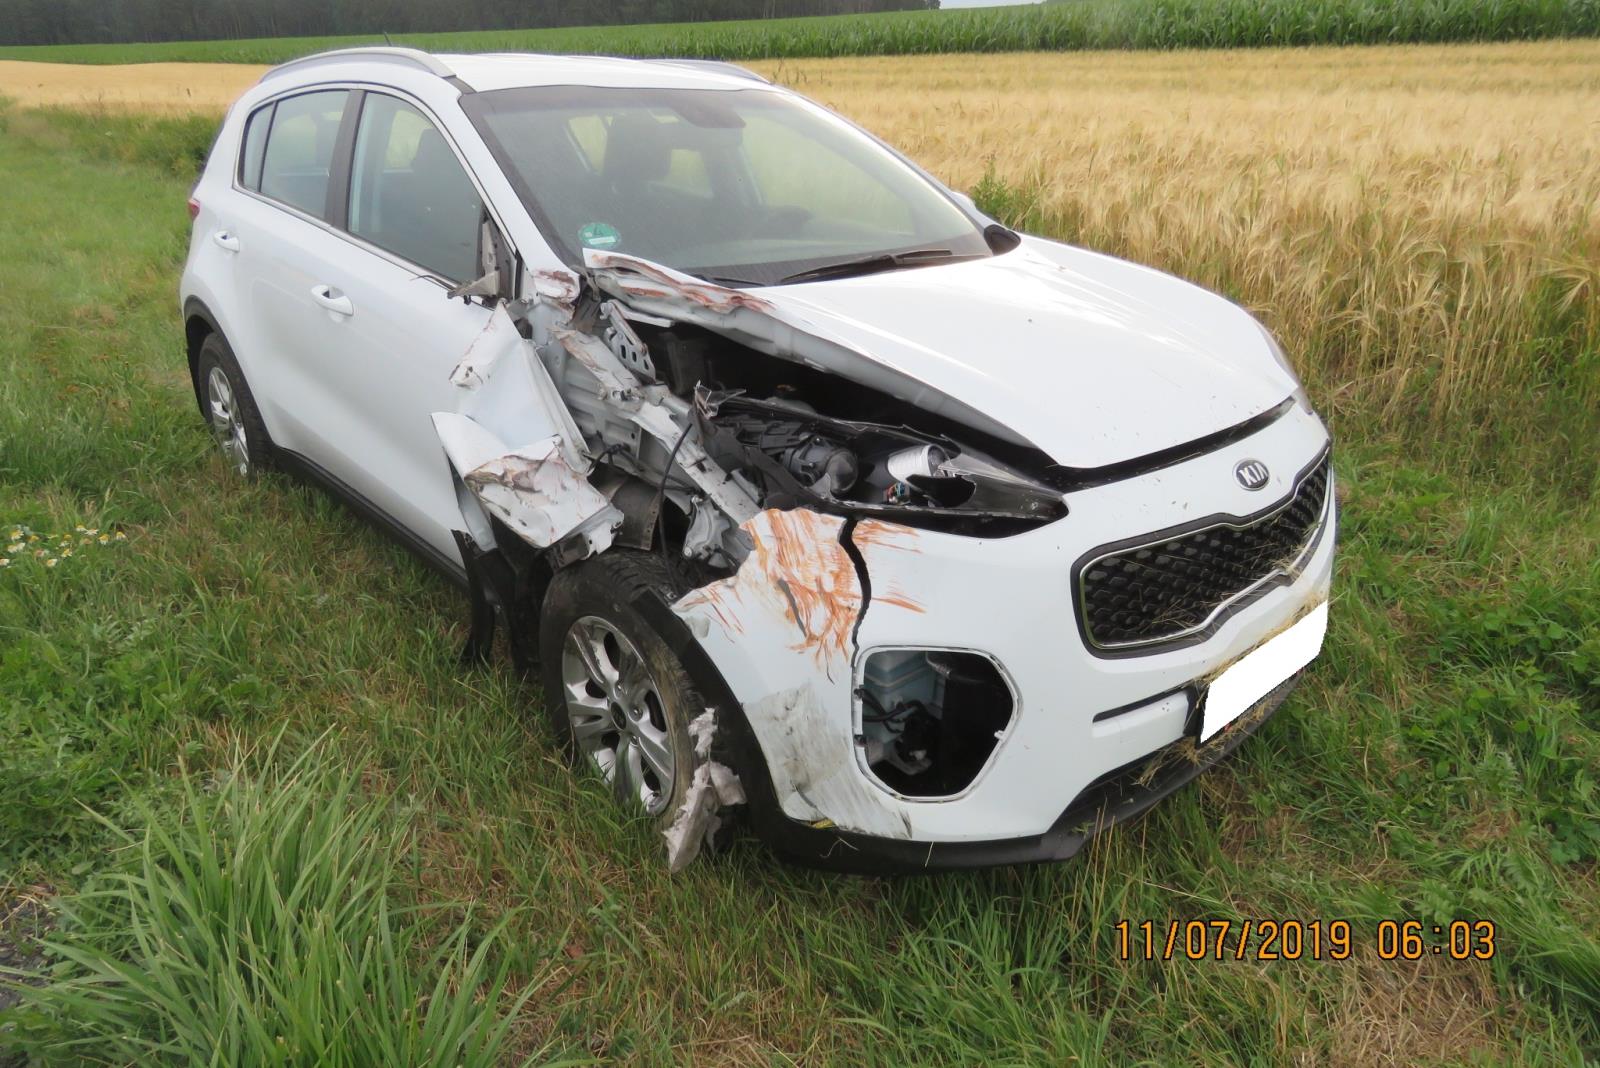 Dopravní nehoda - Draženov - 11.07.2019